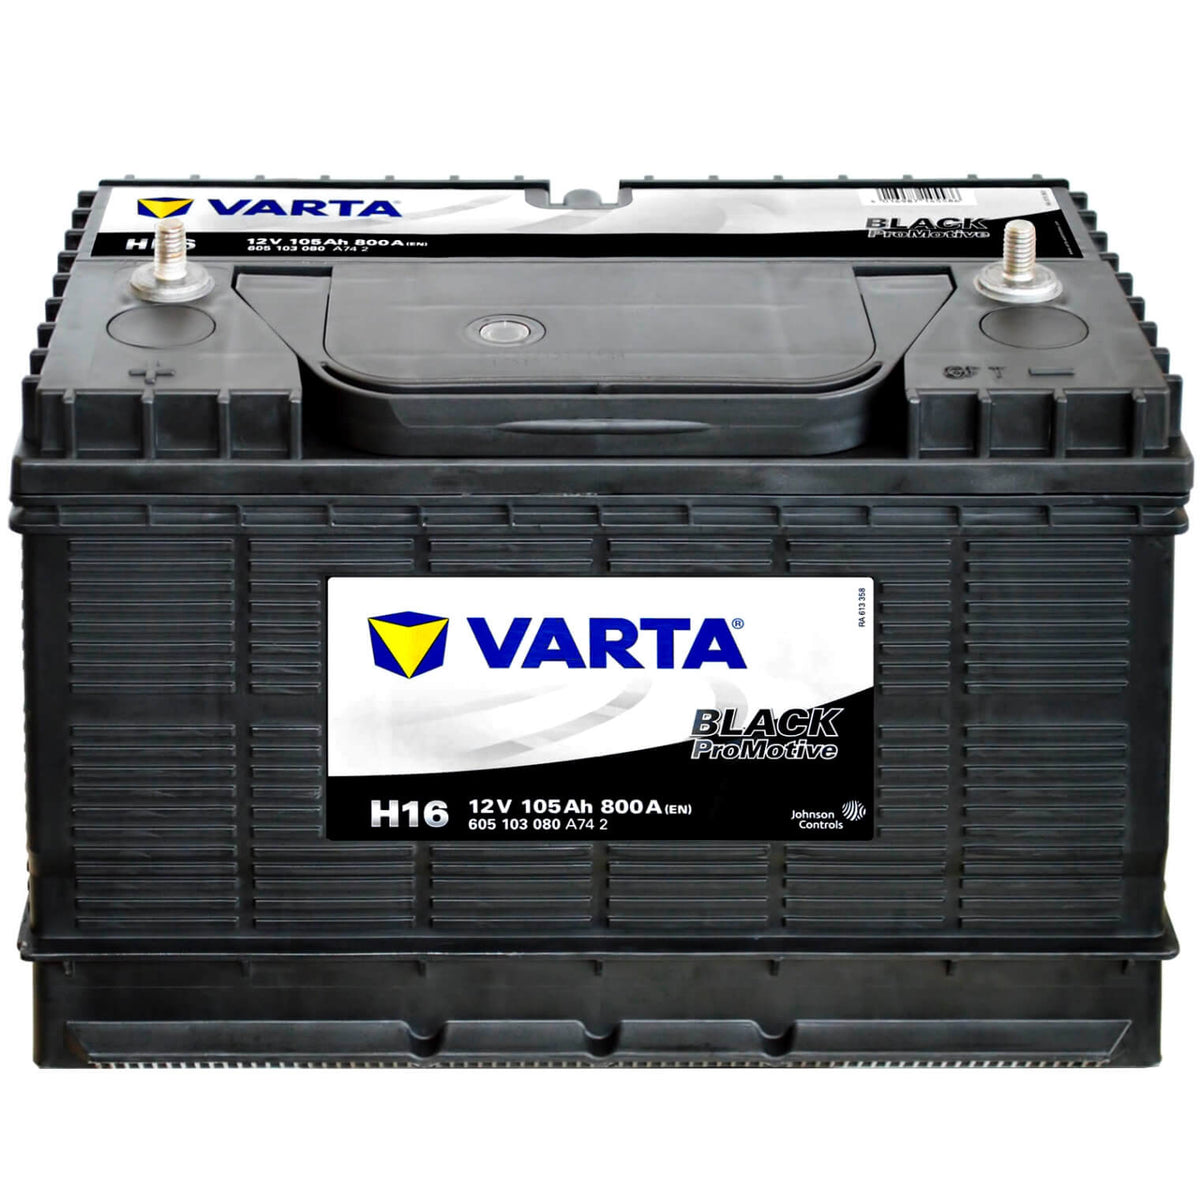 Vklopdsh 150A-250A WH-A007 Batterie Schalter Batterie Trenn